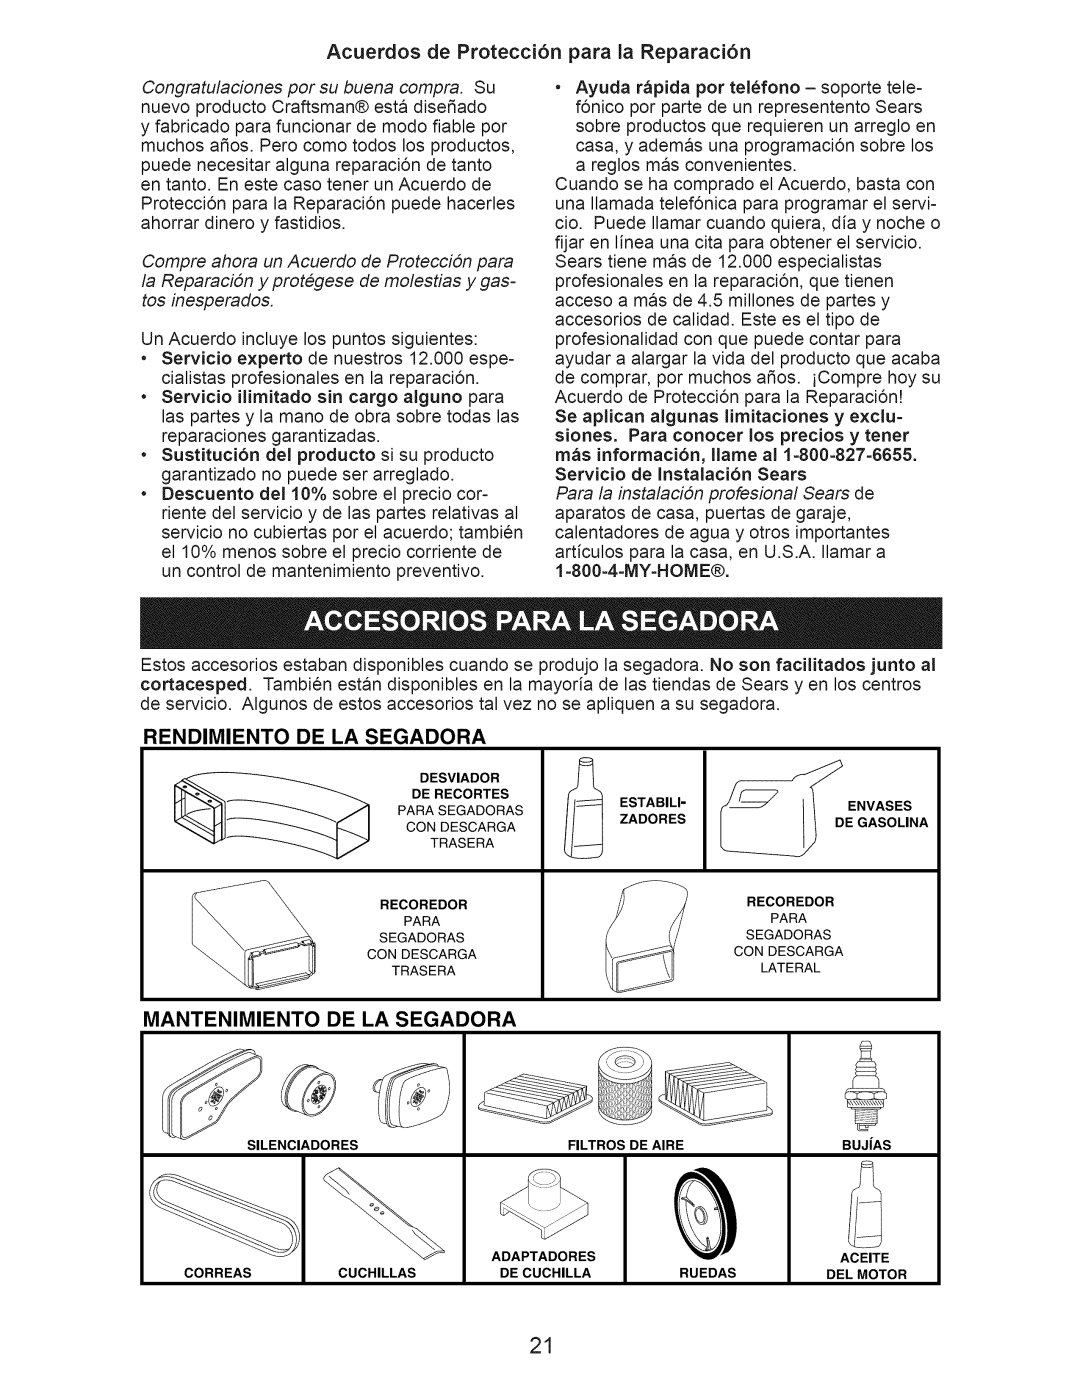 Craftsman 917.389052 owner manual Acuerdos de Protecci6n para la Reparaci6n, Rendimiento, De La Segadora, Mantenimiento 